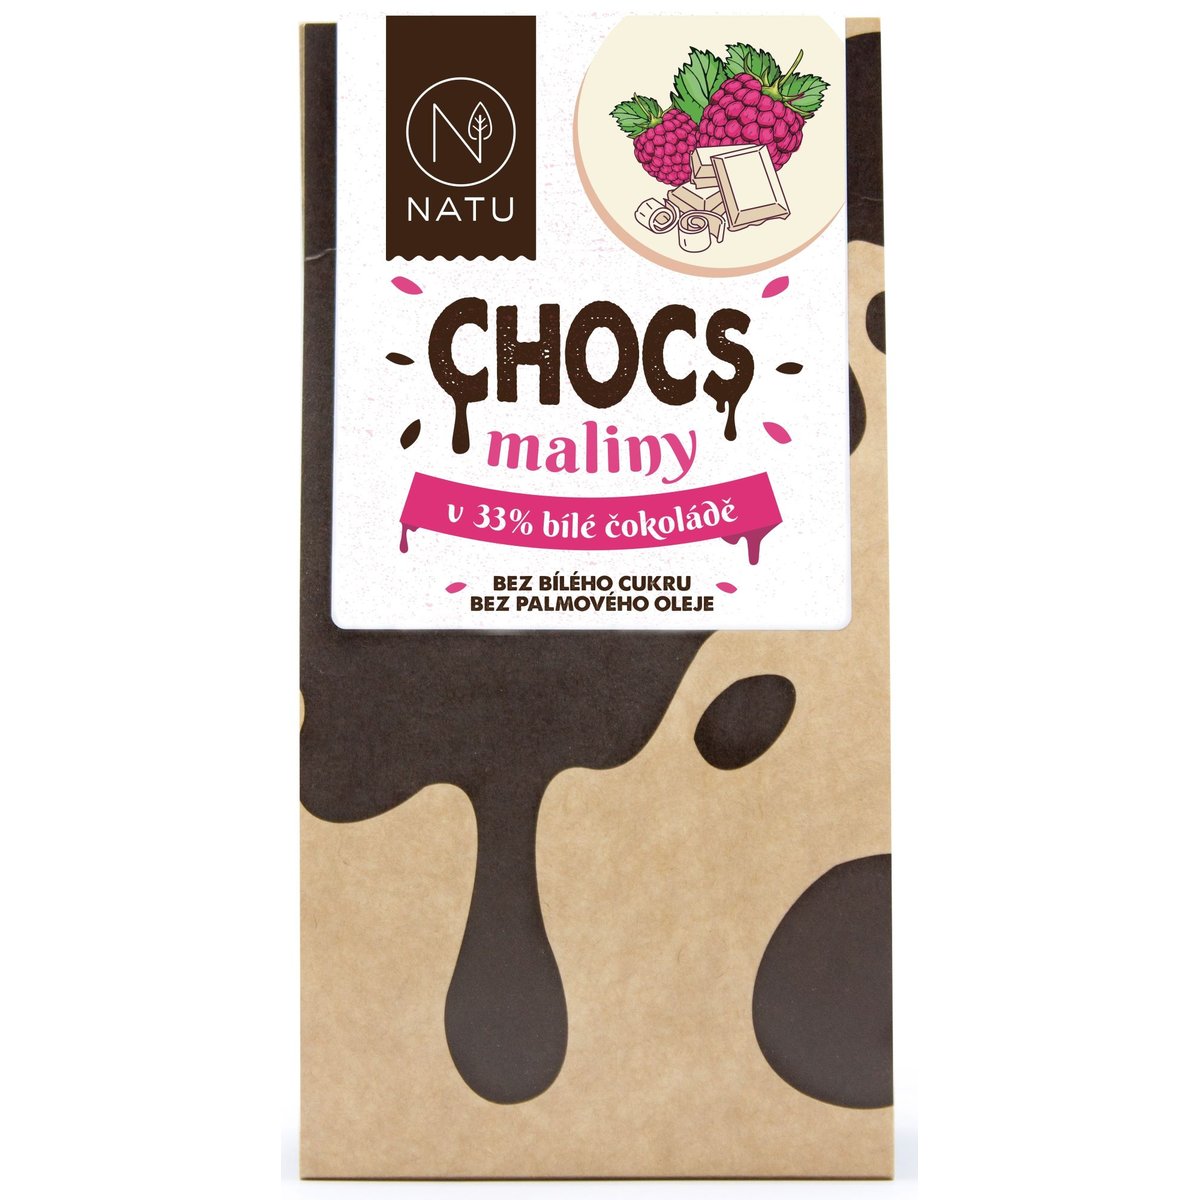 Natu Chocs Maliny v 33% bílé čokoládě